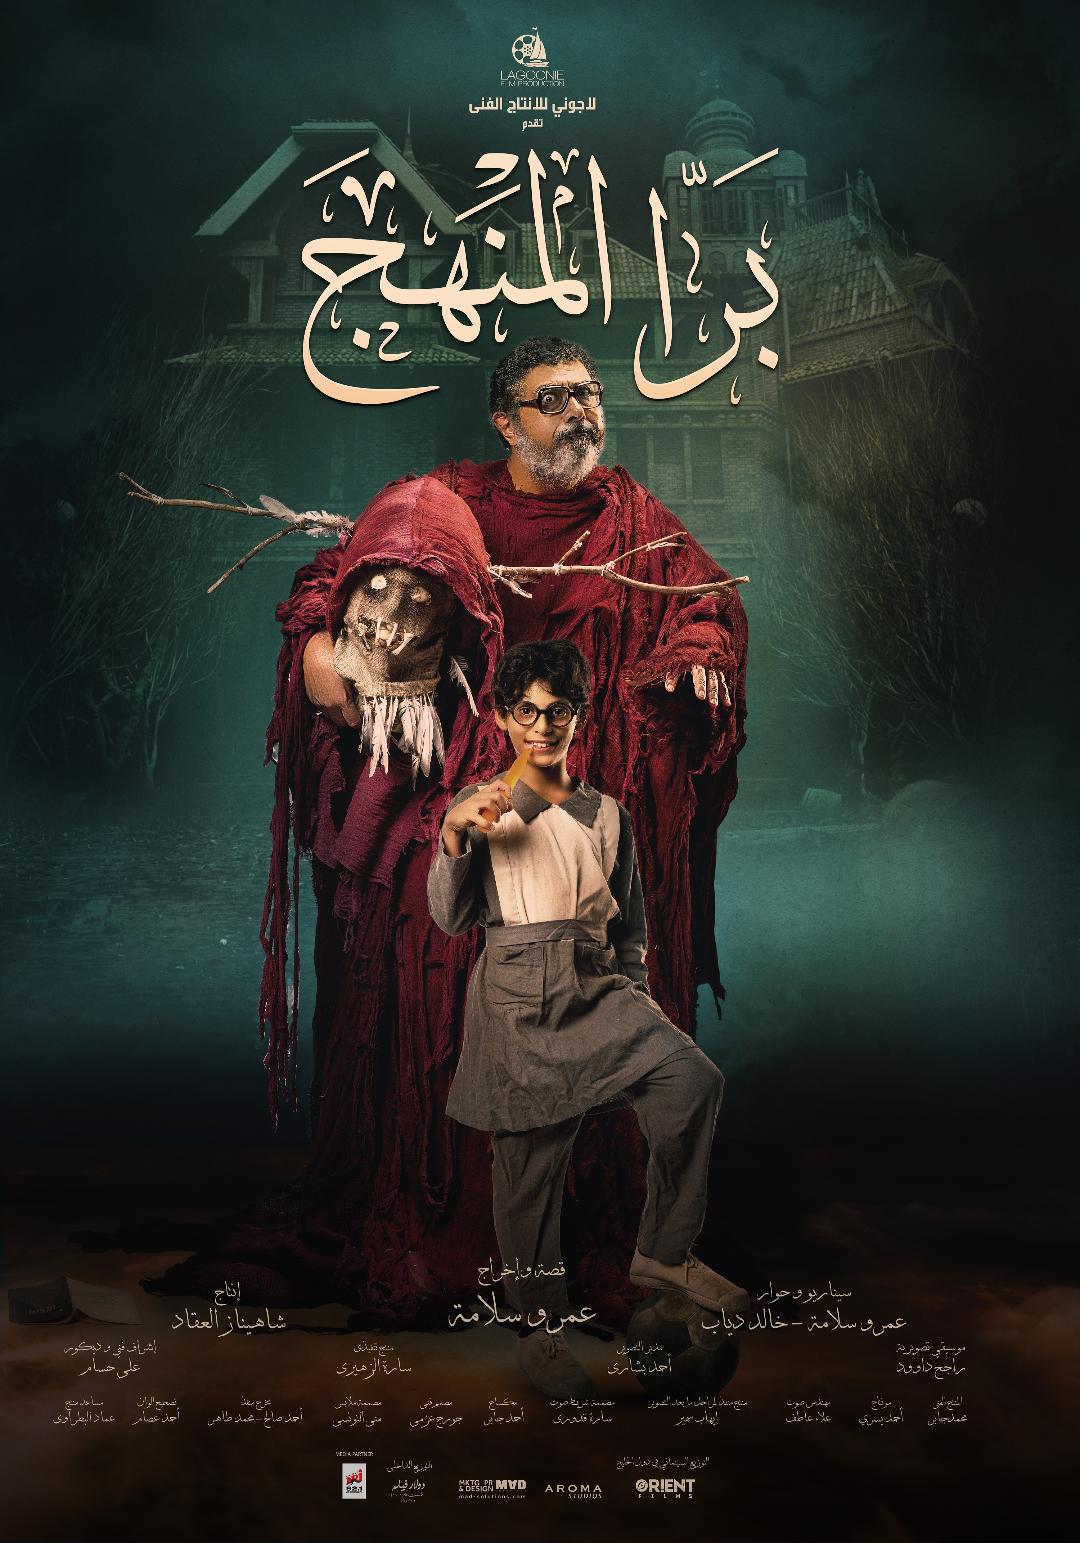  البوستر الرسمي لفيلم برا المنهج للمخرج عمرو سلامة ( الأمة برس )